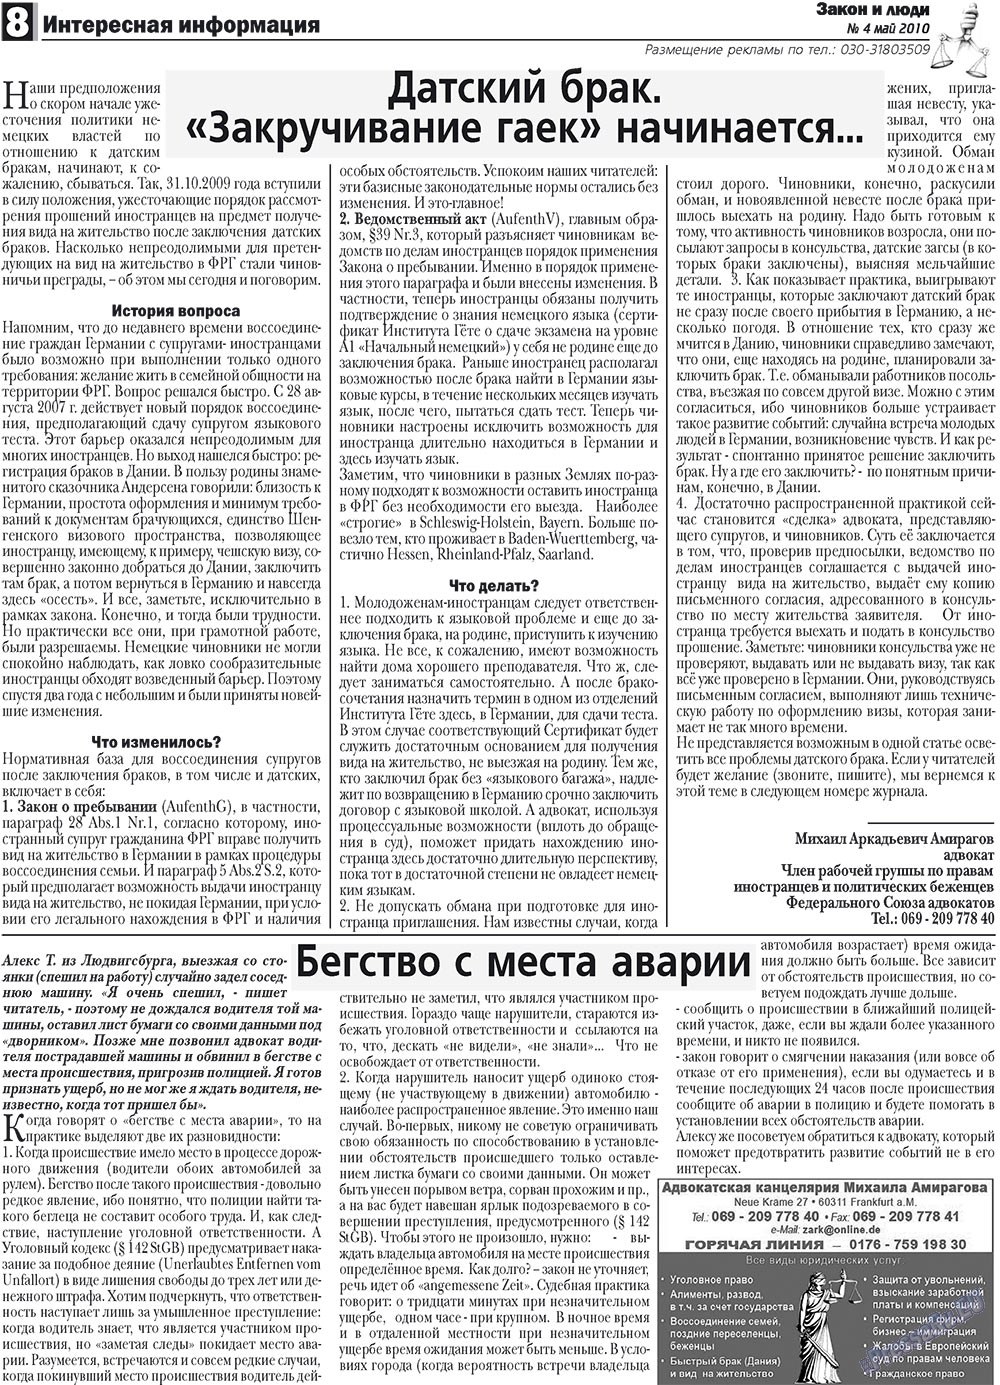 Закон и люди, газета. 2010 №4 стр.8